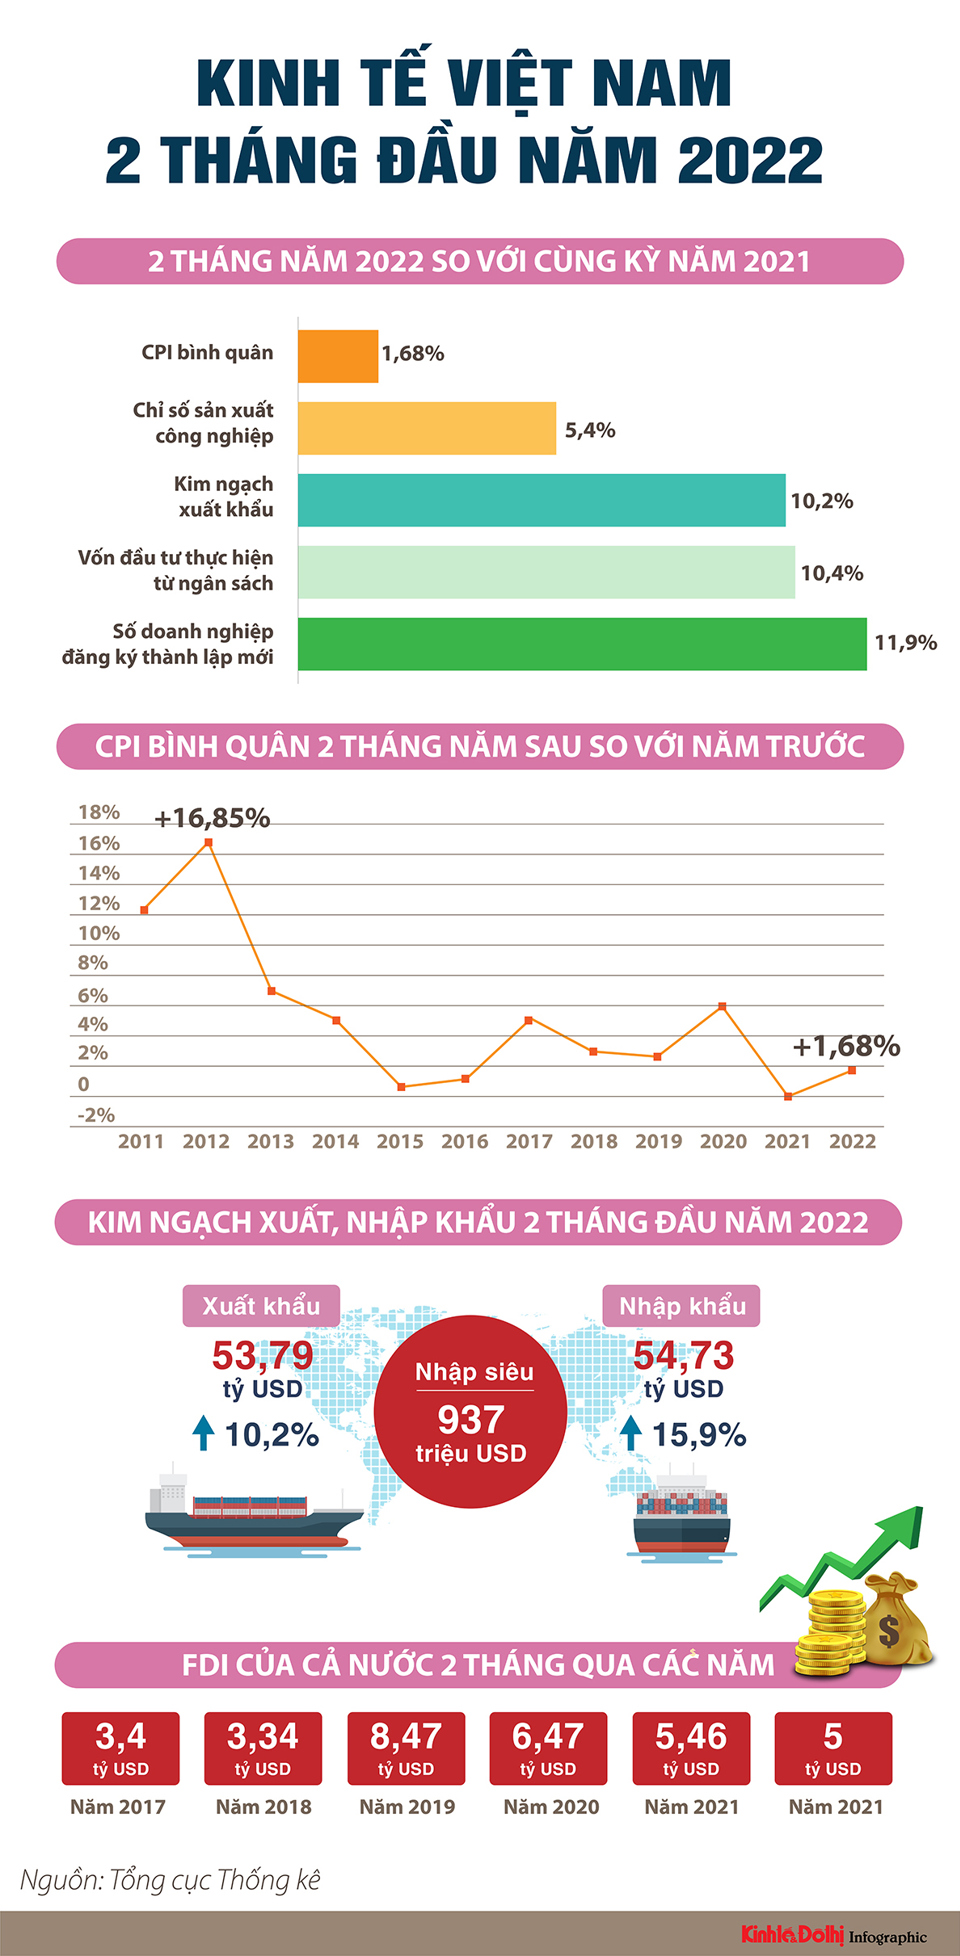 Kinh tế Việt Nam trong 2 tháng đầu năm 2022 - Ảnh 1